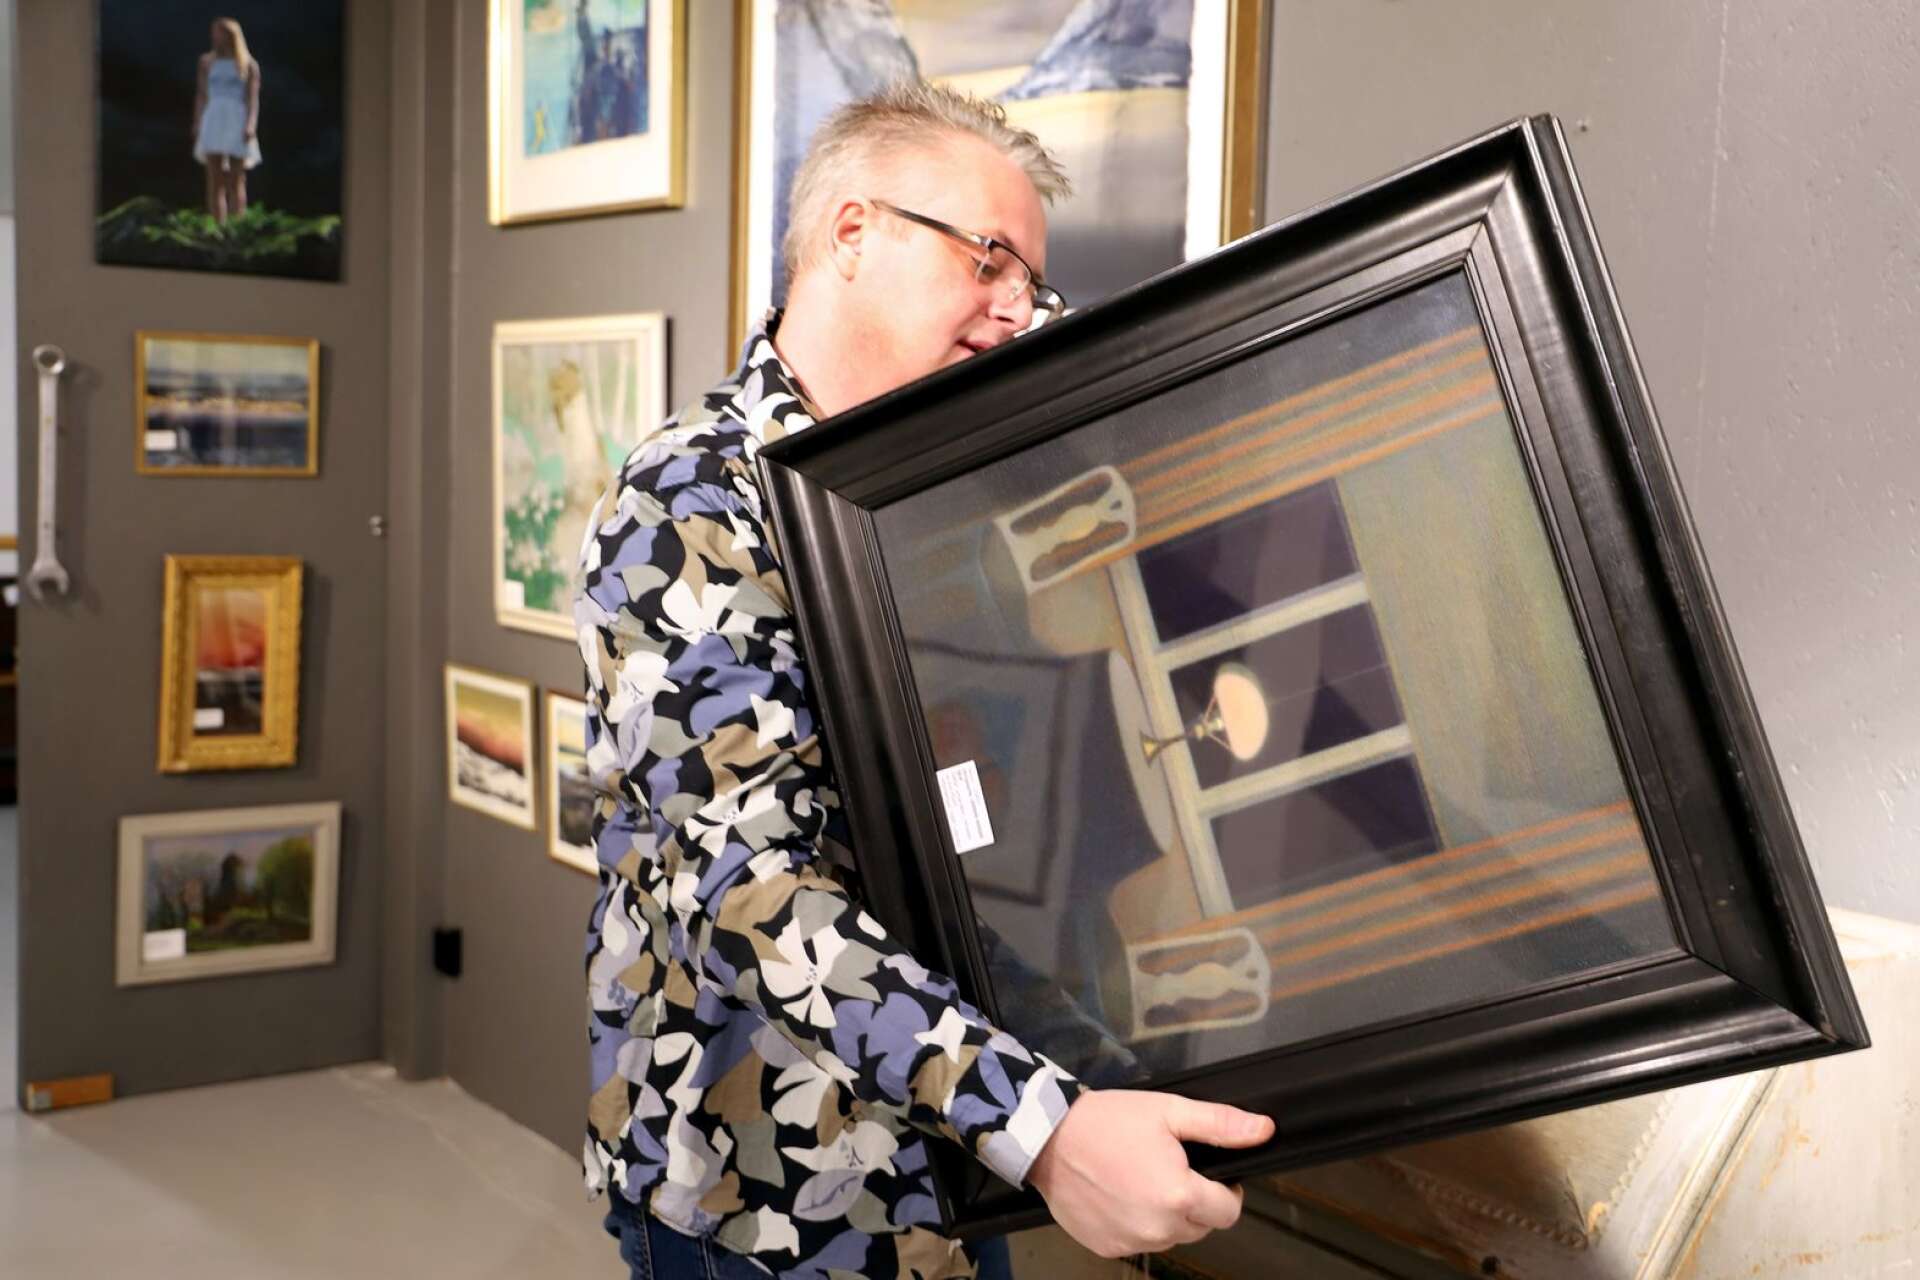 Ett unikt konstverk är på väg mot ett nytt hem. Peter Pettersson på Auktionsverket i Karlstad fick sälja ett finstämt verk av Stefan Johansson och det slutade med nytt världsrekord i prisnivå för denna särpräglade Värmlandskonstnär.